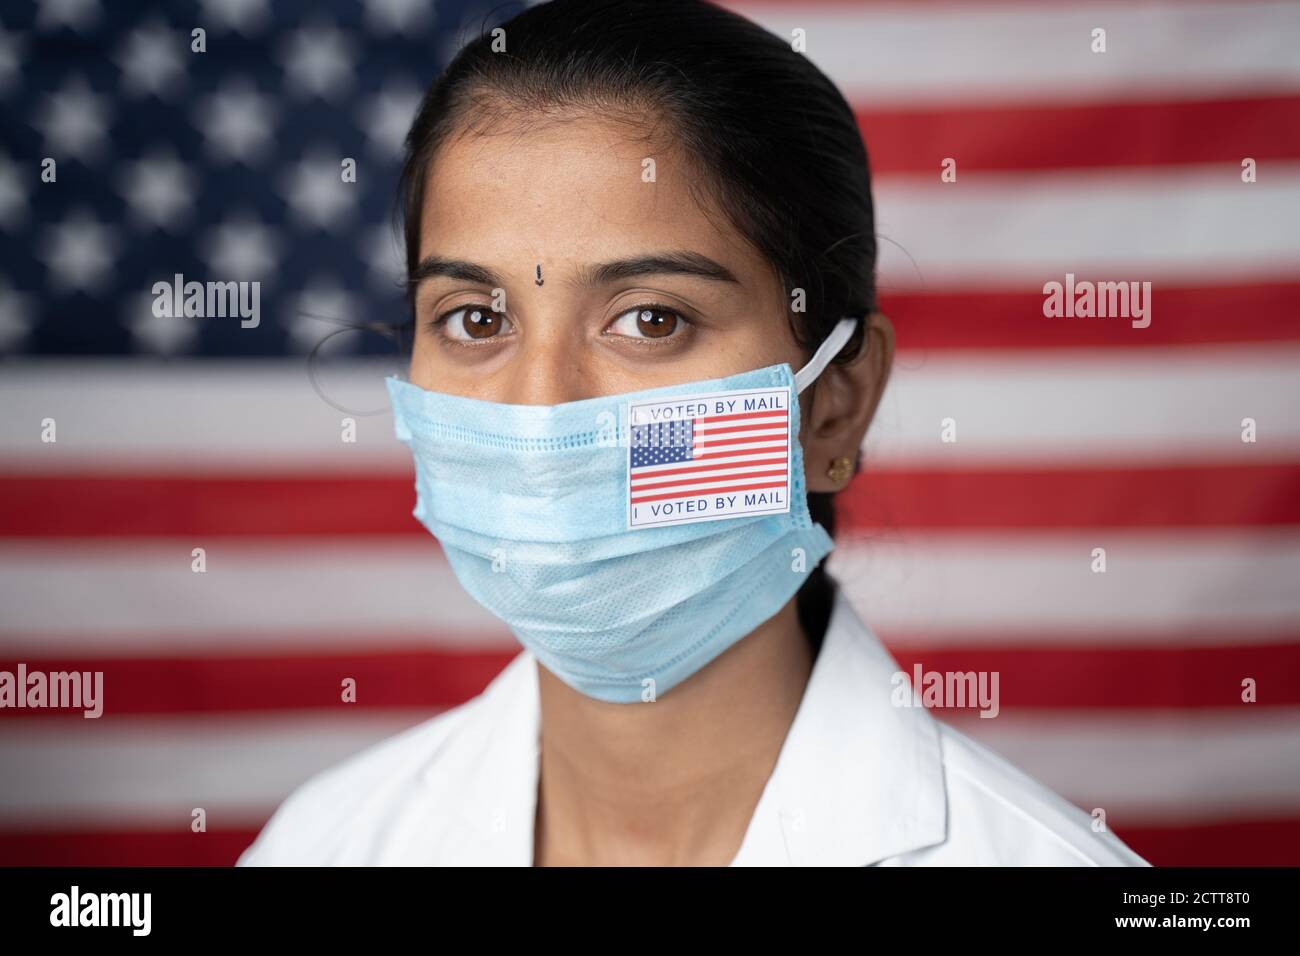 Gros plan face de fille avec moi voté par l'autocollant principal sur son masque médical avec le drapeau américain comme arrière-plan - concept du courrier dans le vote aux élections américaines. Banque D'Images